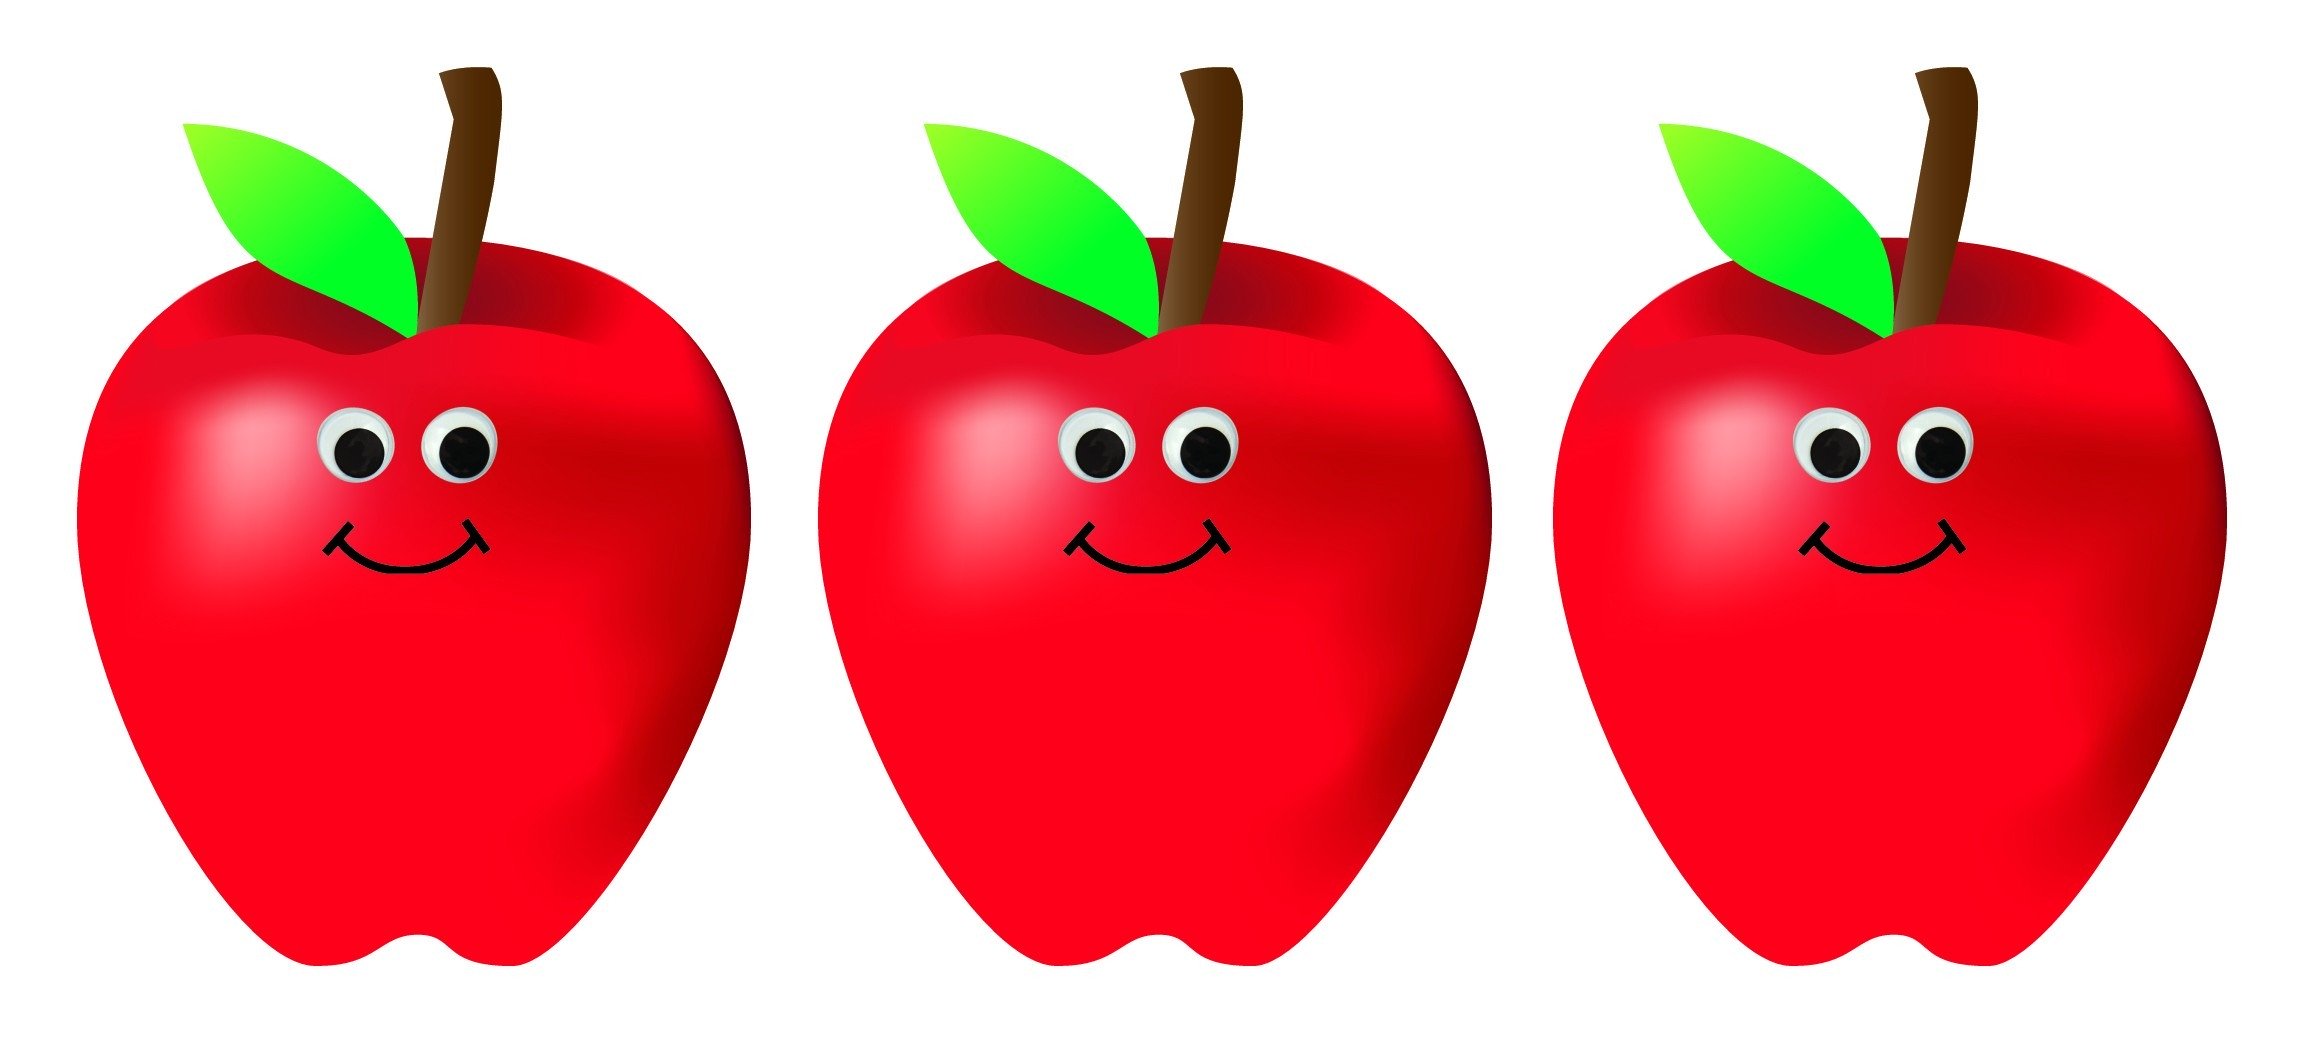 7 happy apples.